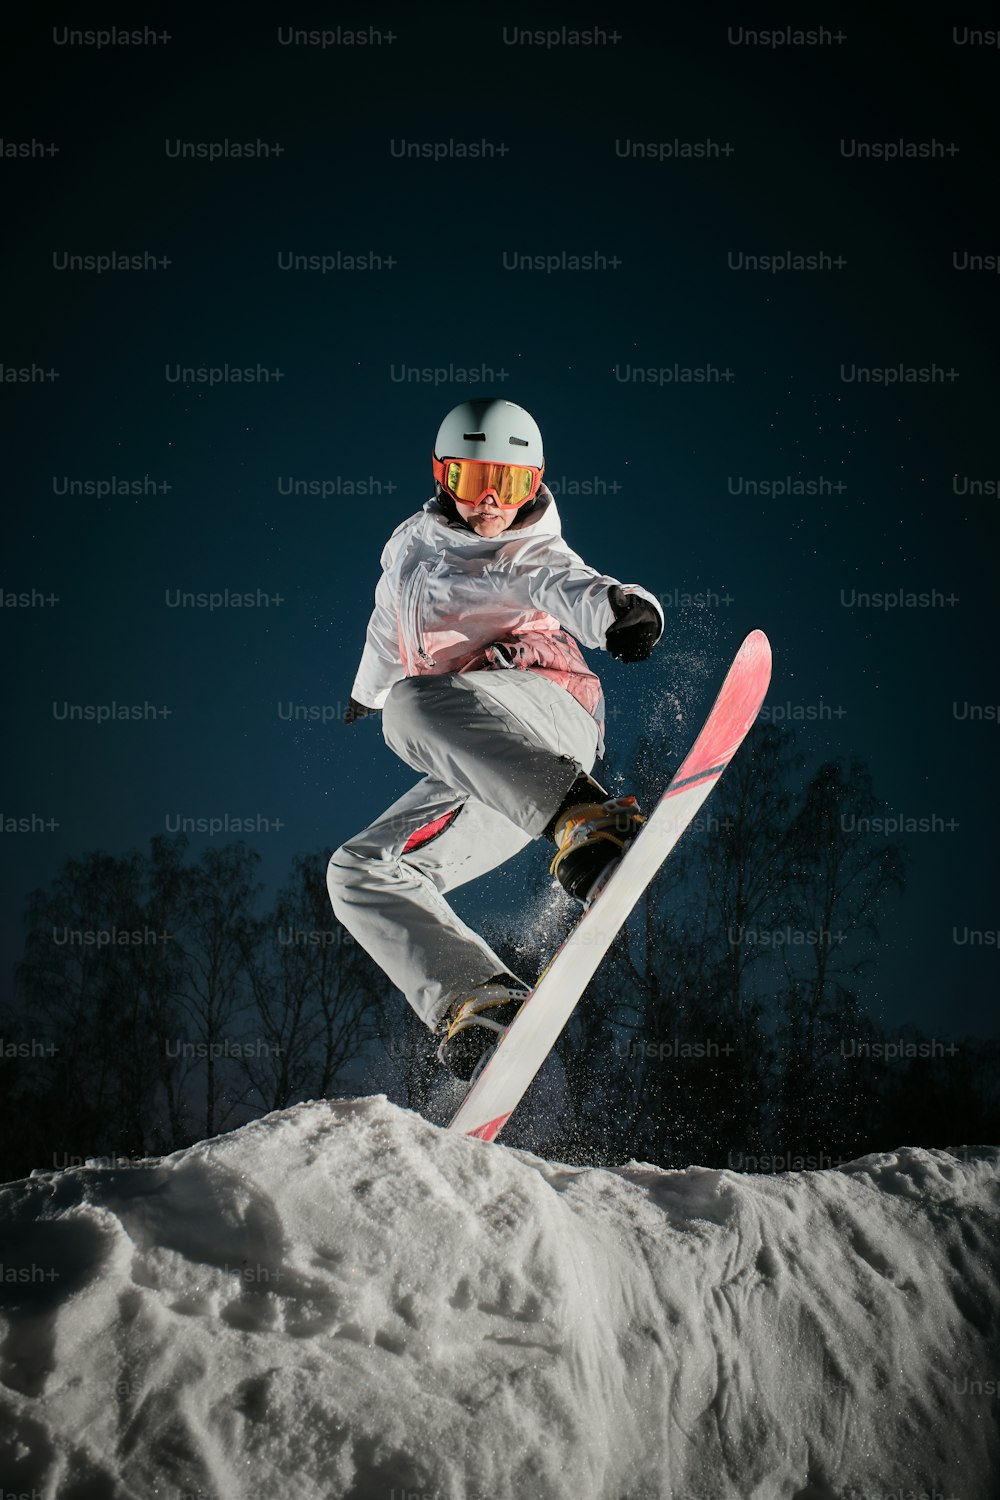 uma pessoa em um snowboard pulando no ar